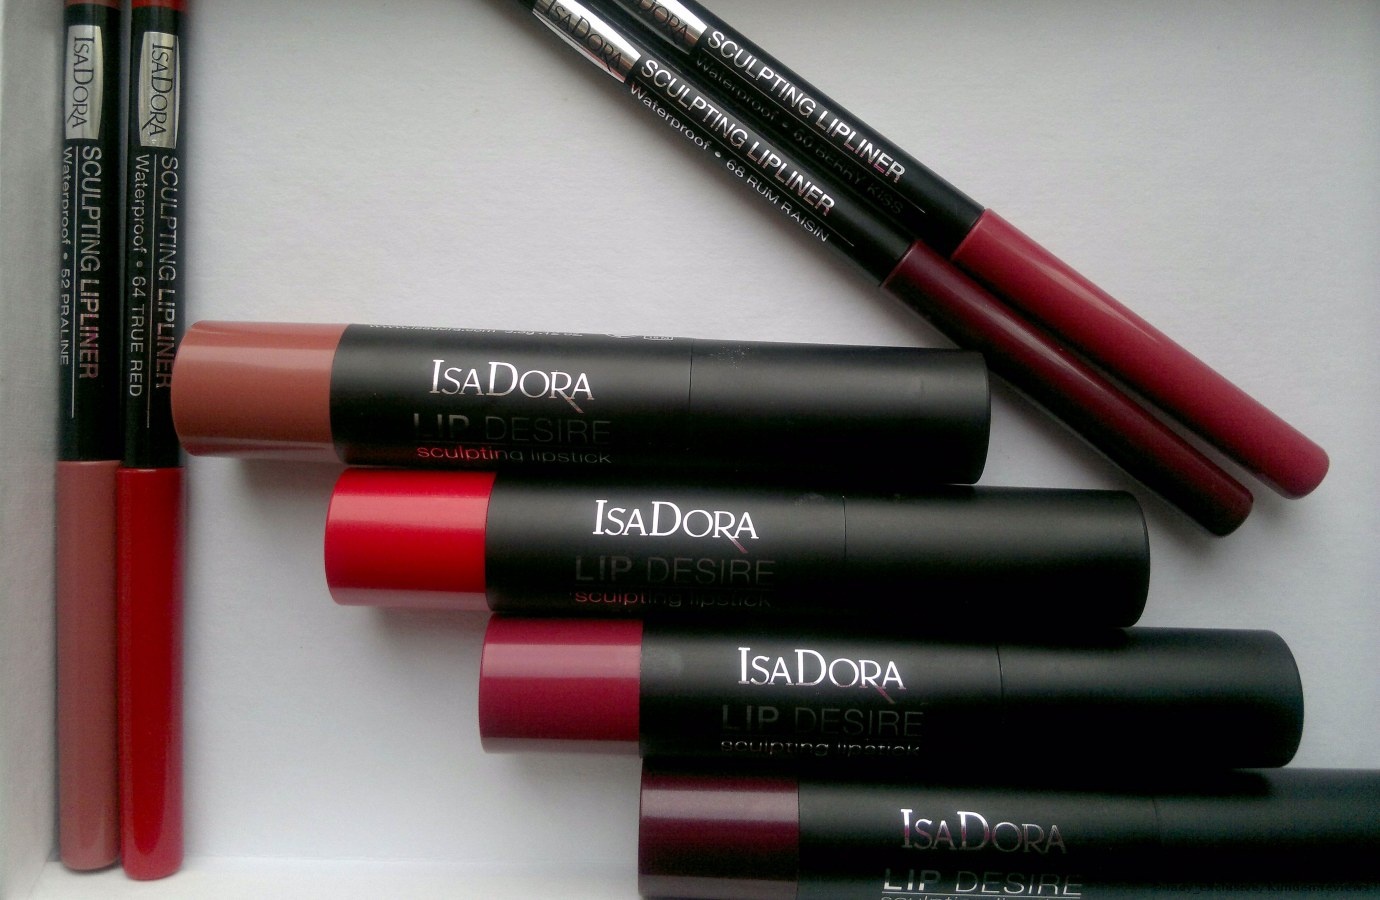 IsaDora Lip Desire Sculpting Lipstick & Isadora Sculpting Lipliner